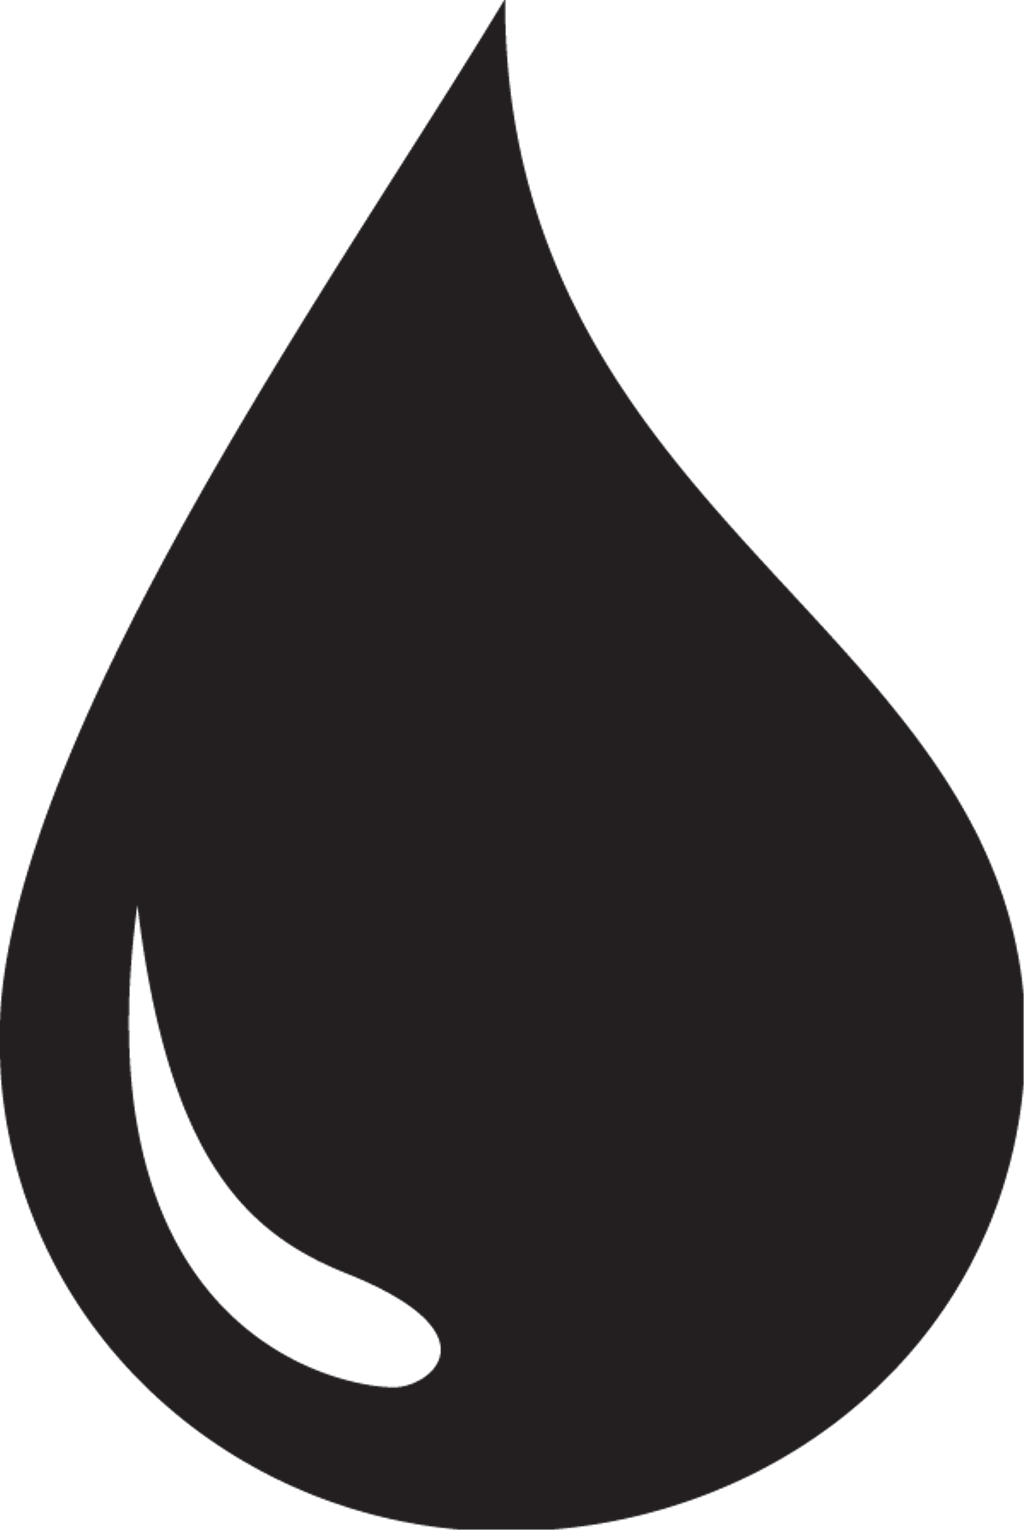 A Black Drop Of Oil